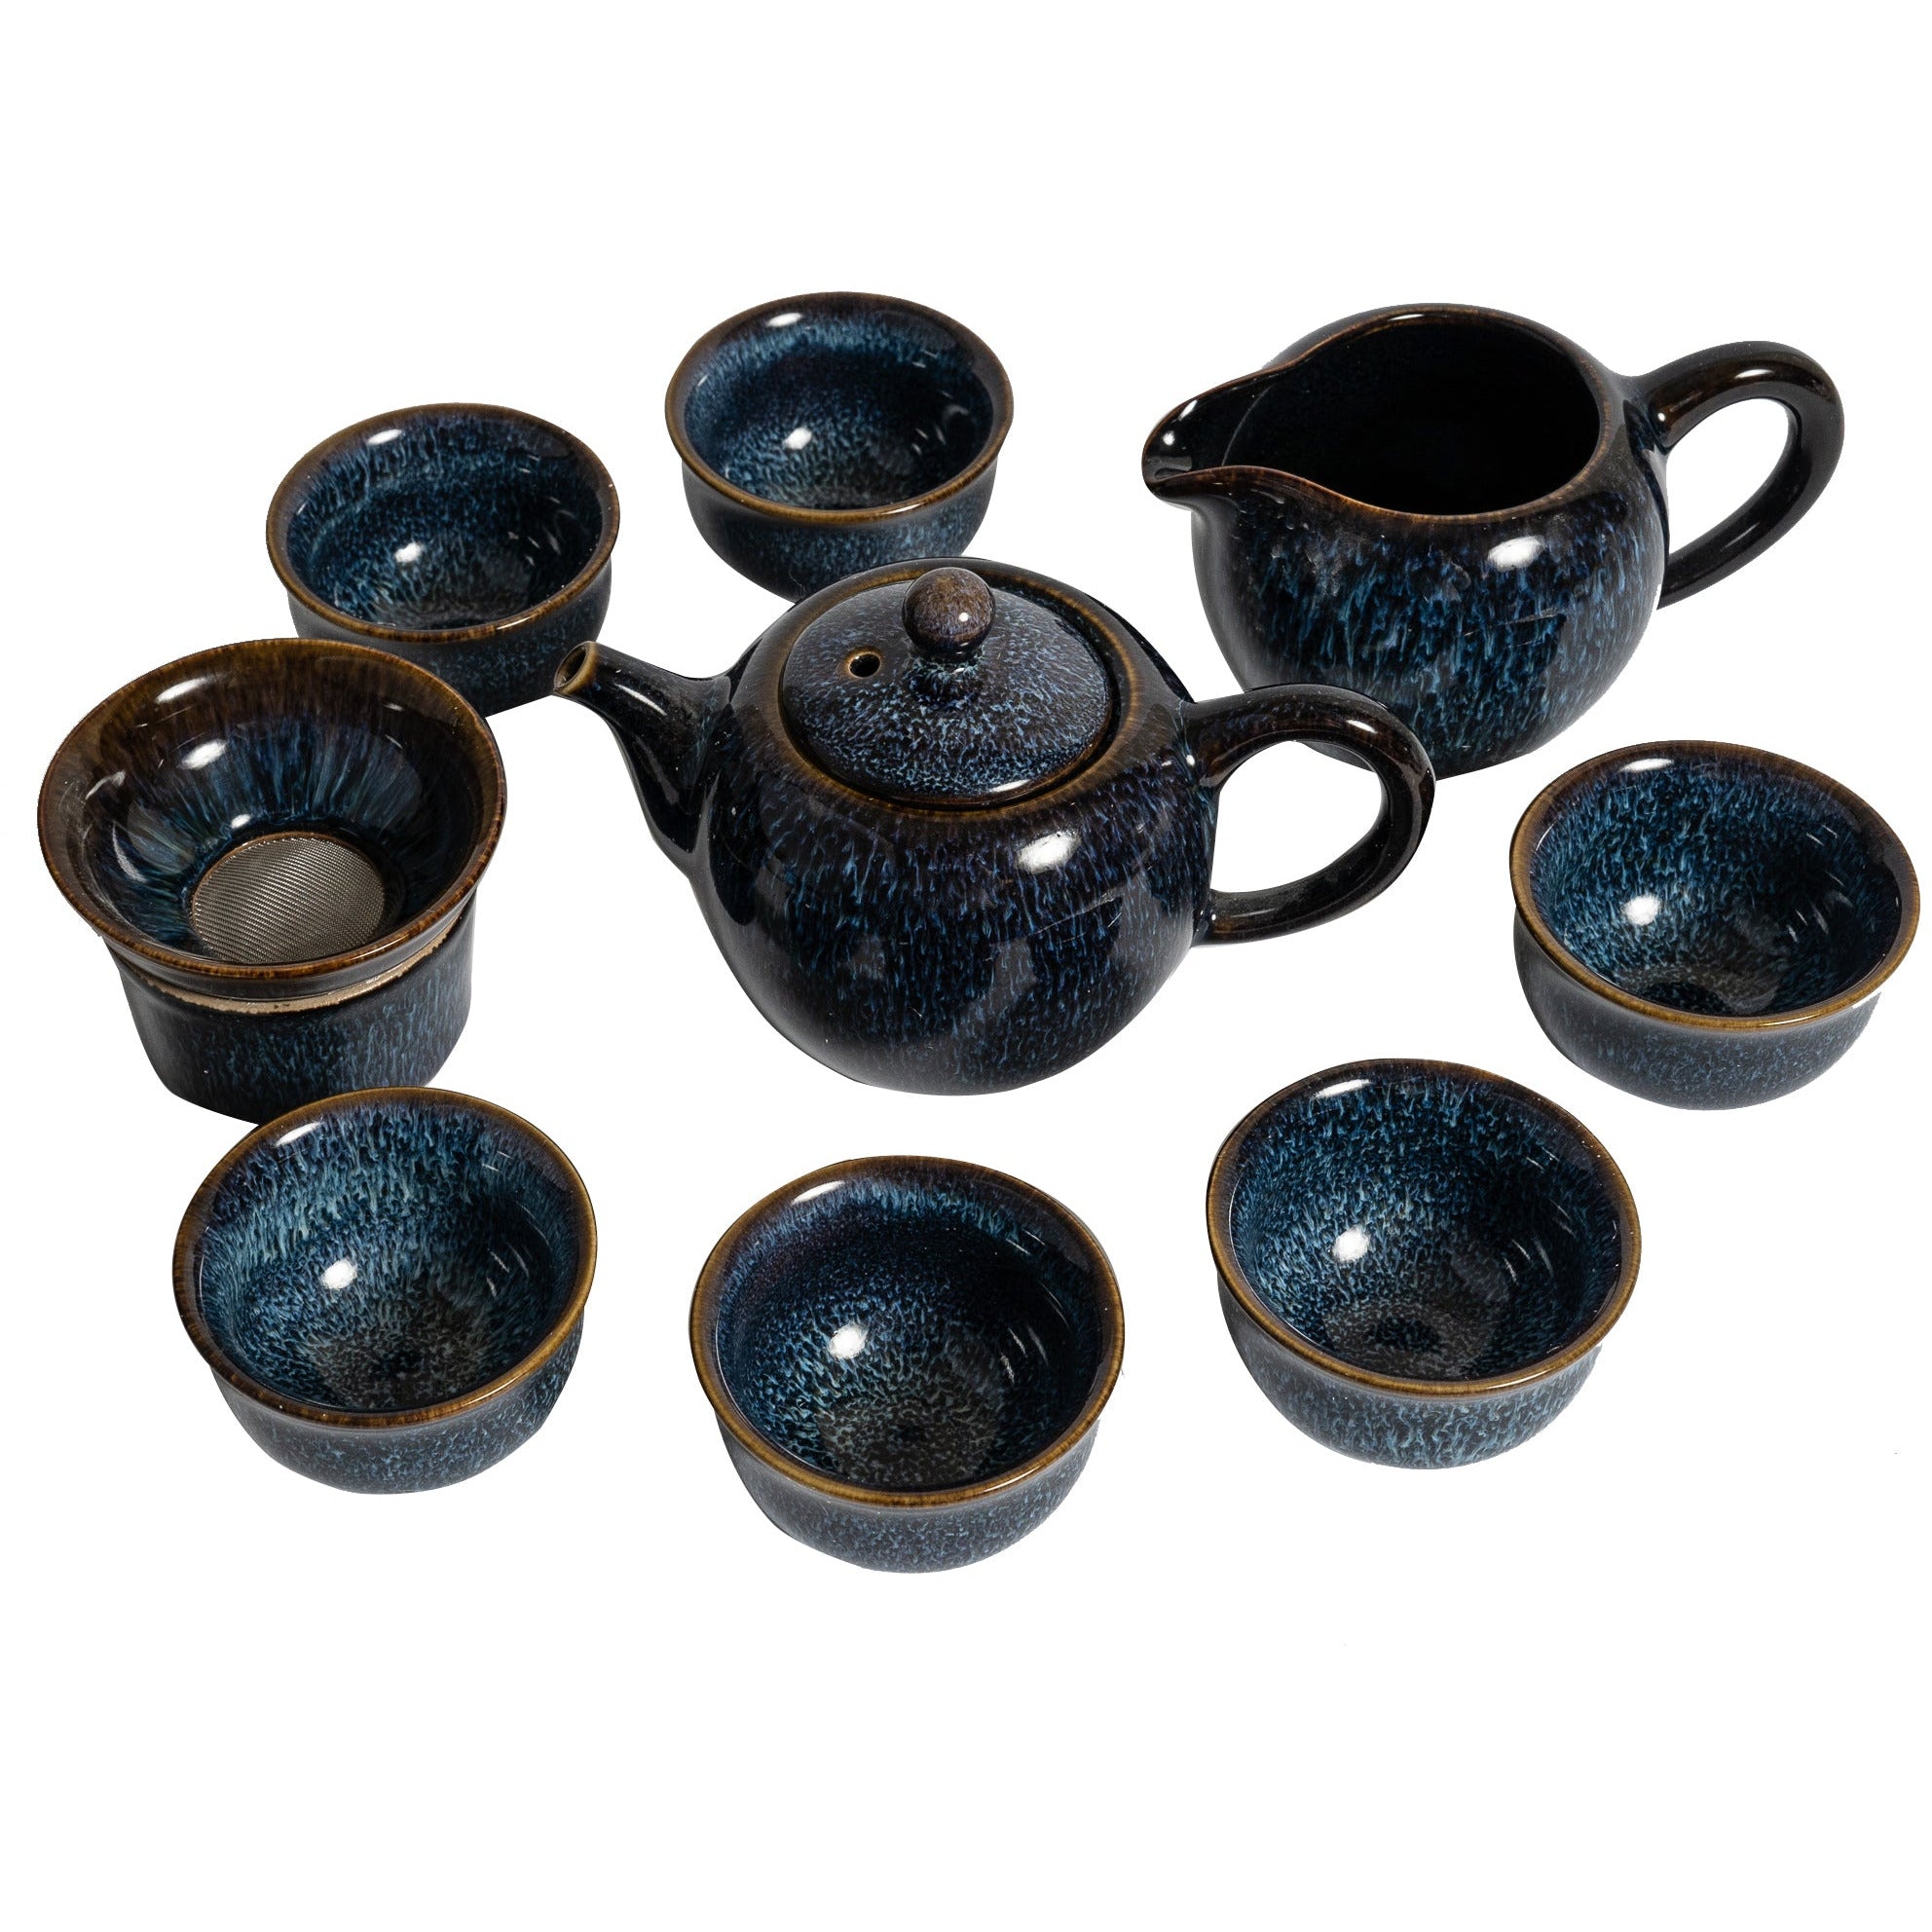 Juego de té, diseño inspirado en la dinastía Song